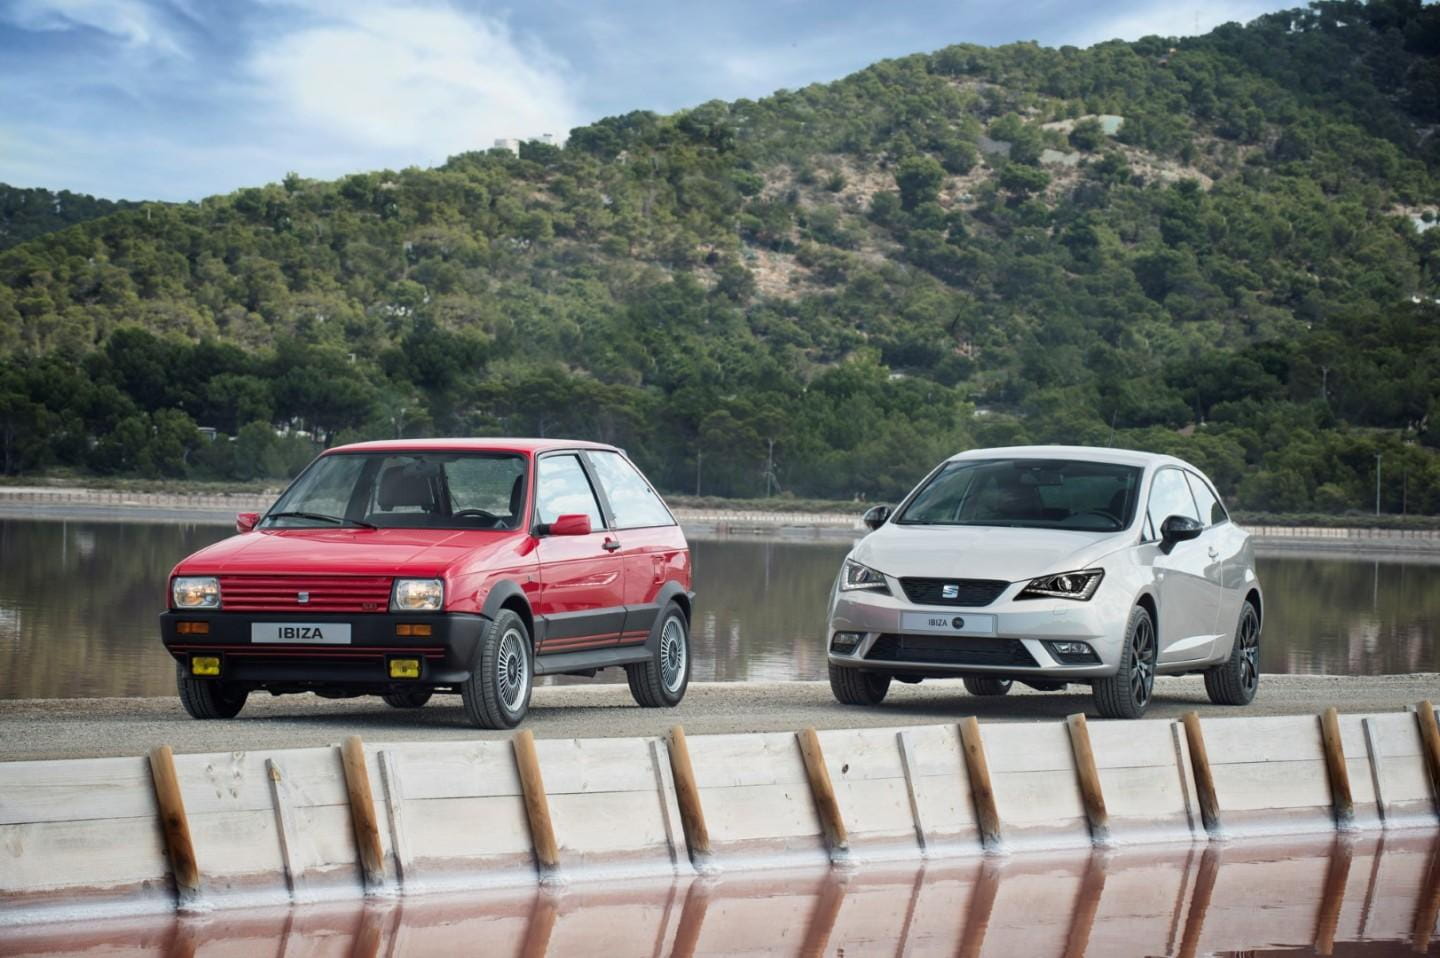 Historia del SEAT Ibiza: 30 años de éxito en las carreteras